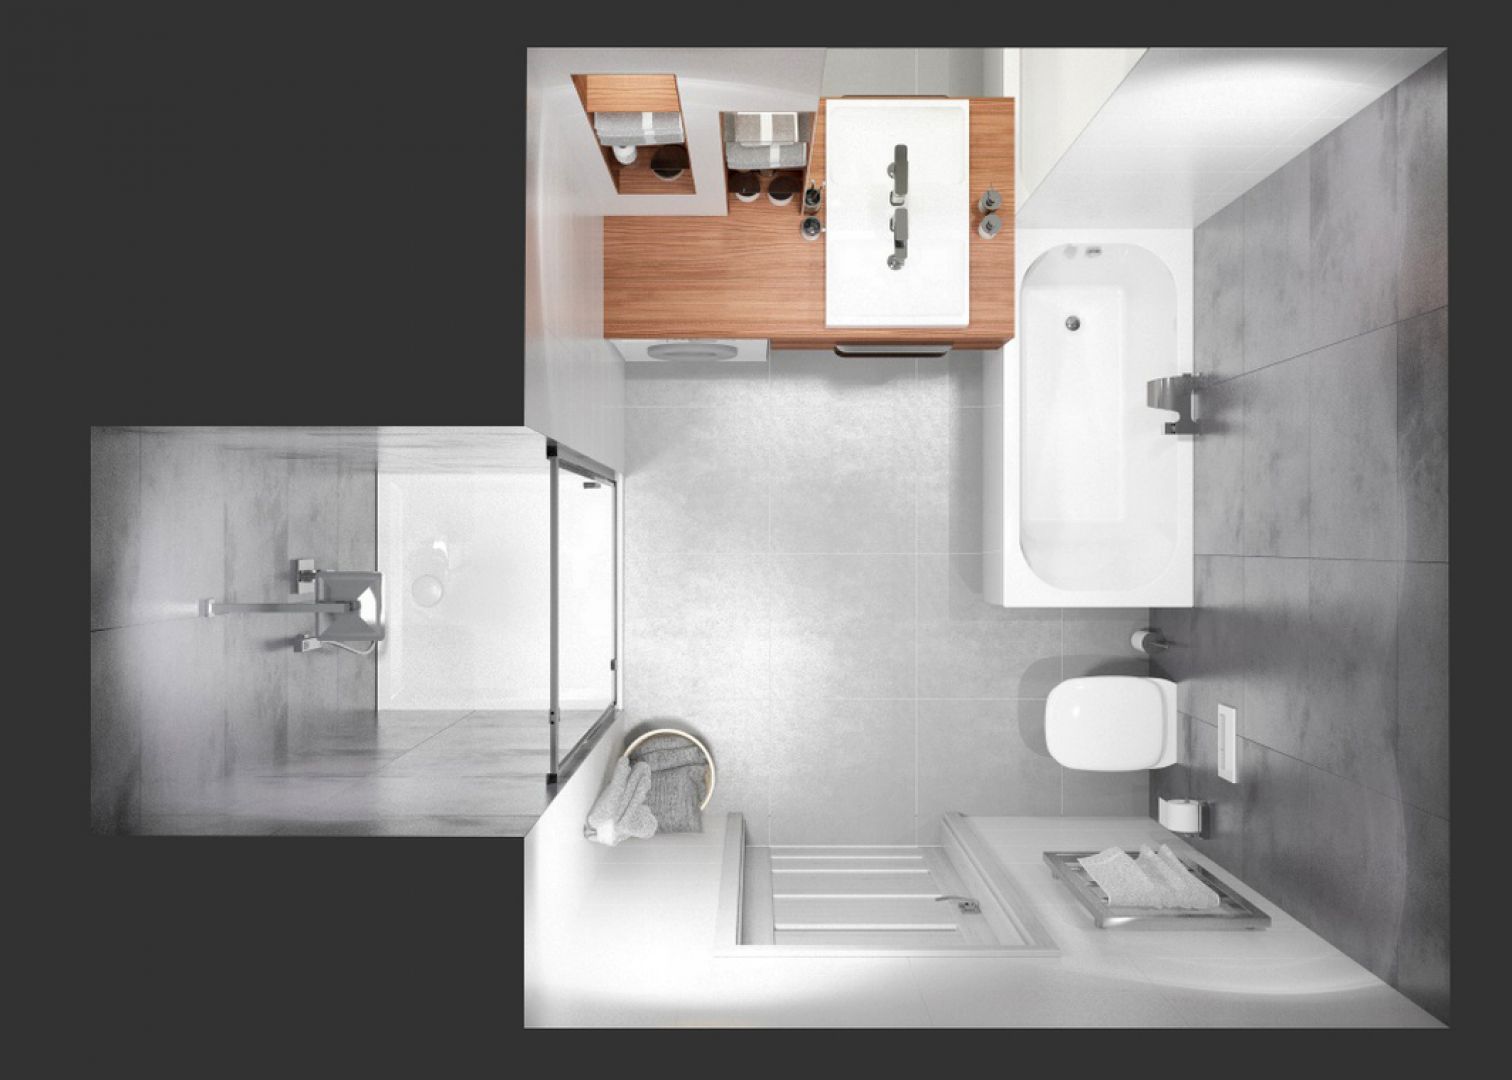 W przypadku małej łazienki podstawą jest wybór kabiny prysznicowej lub wanny oraz umywalki, które wpasują się w metraż i zapewnią użytkownikom maksimum wygody i funkcjonalności nie zagracając przy tym pomieszczenia. Fot. Sanplast